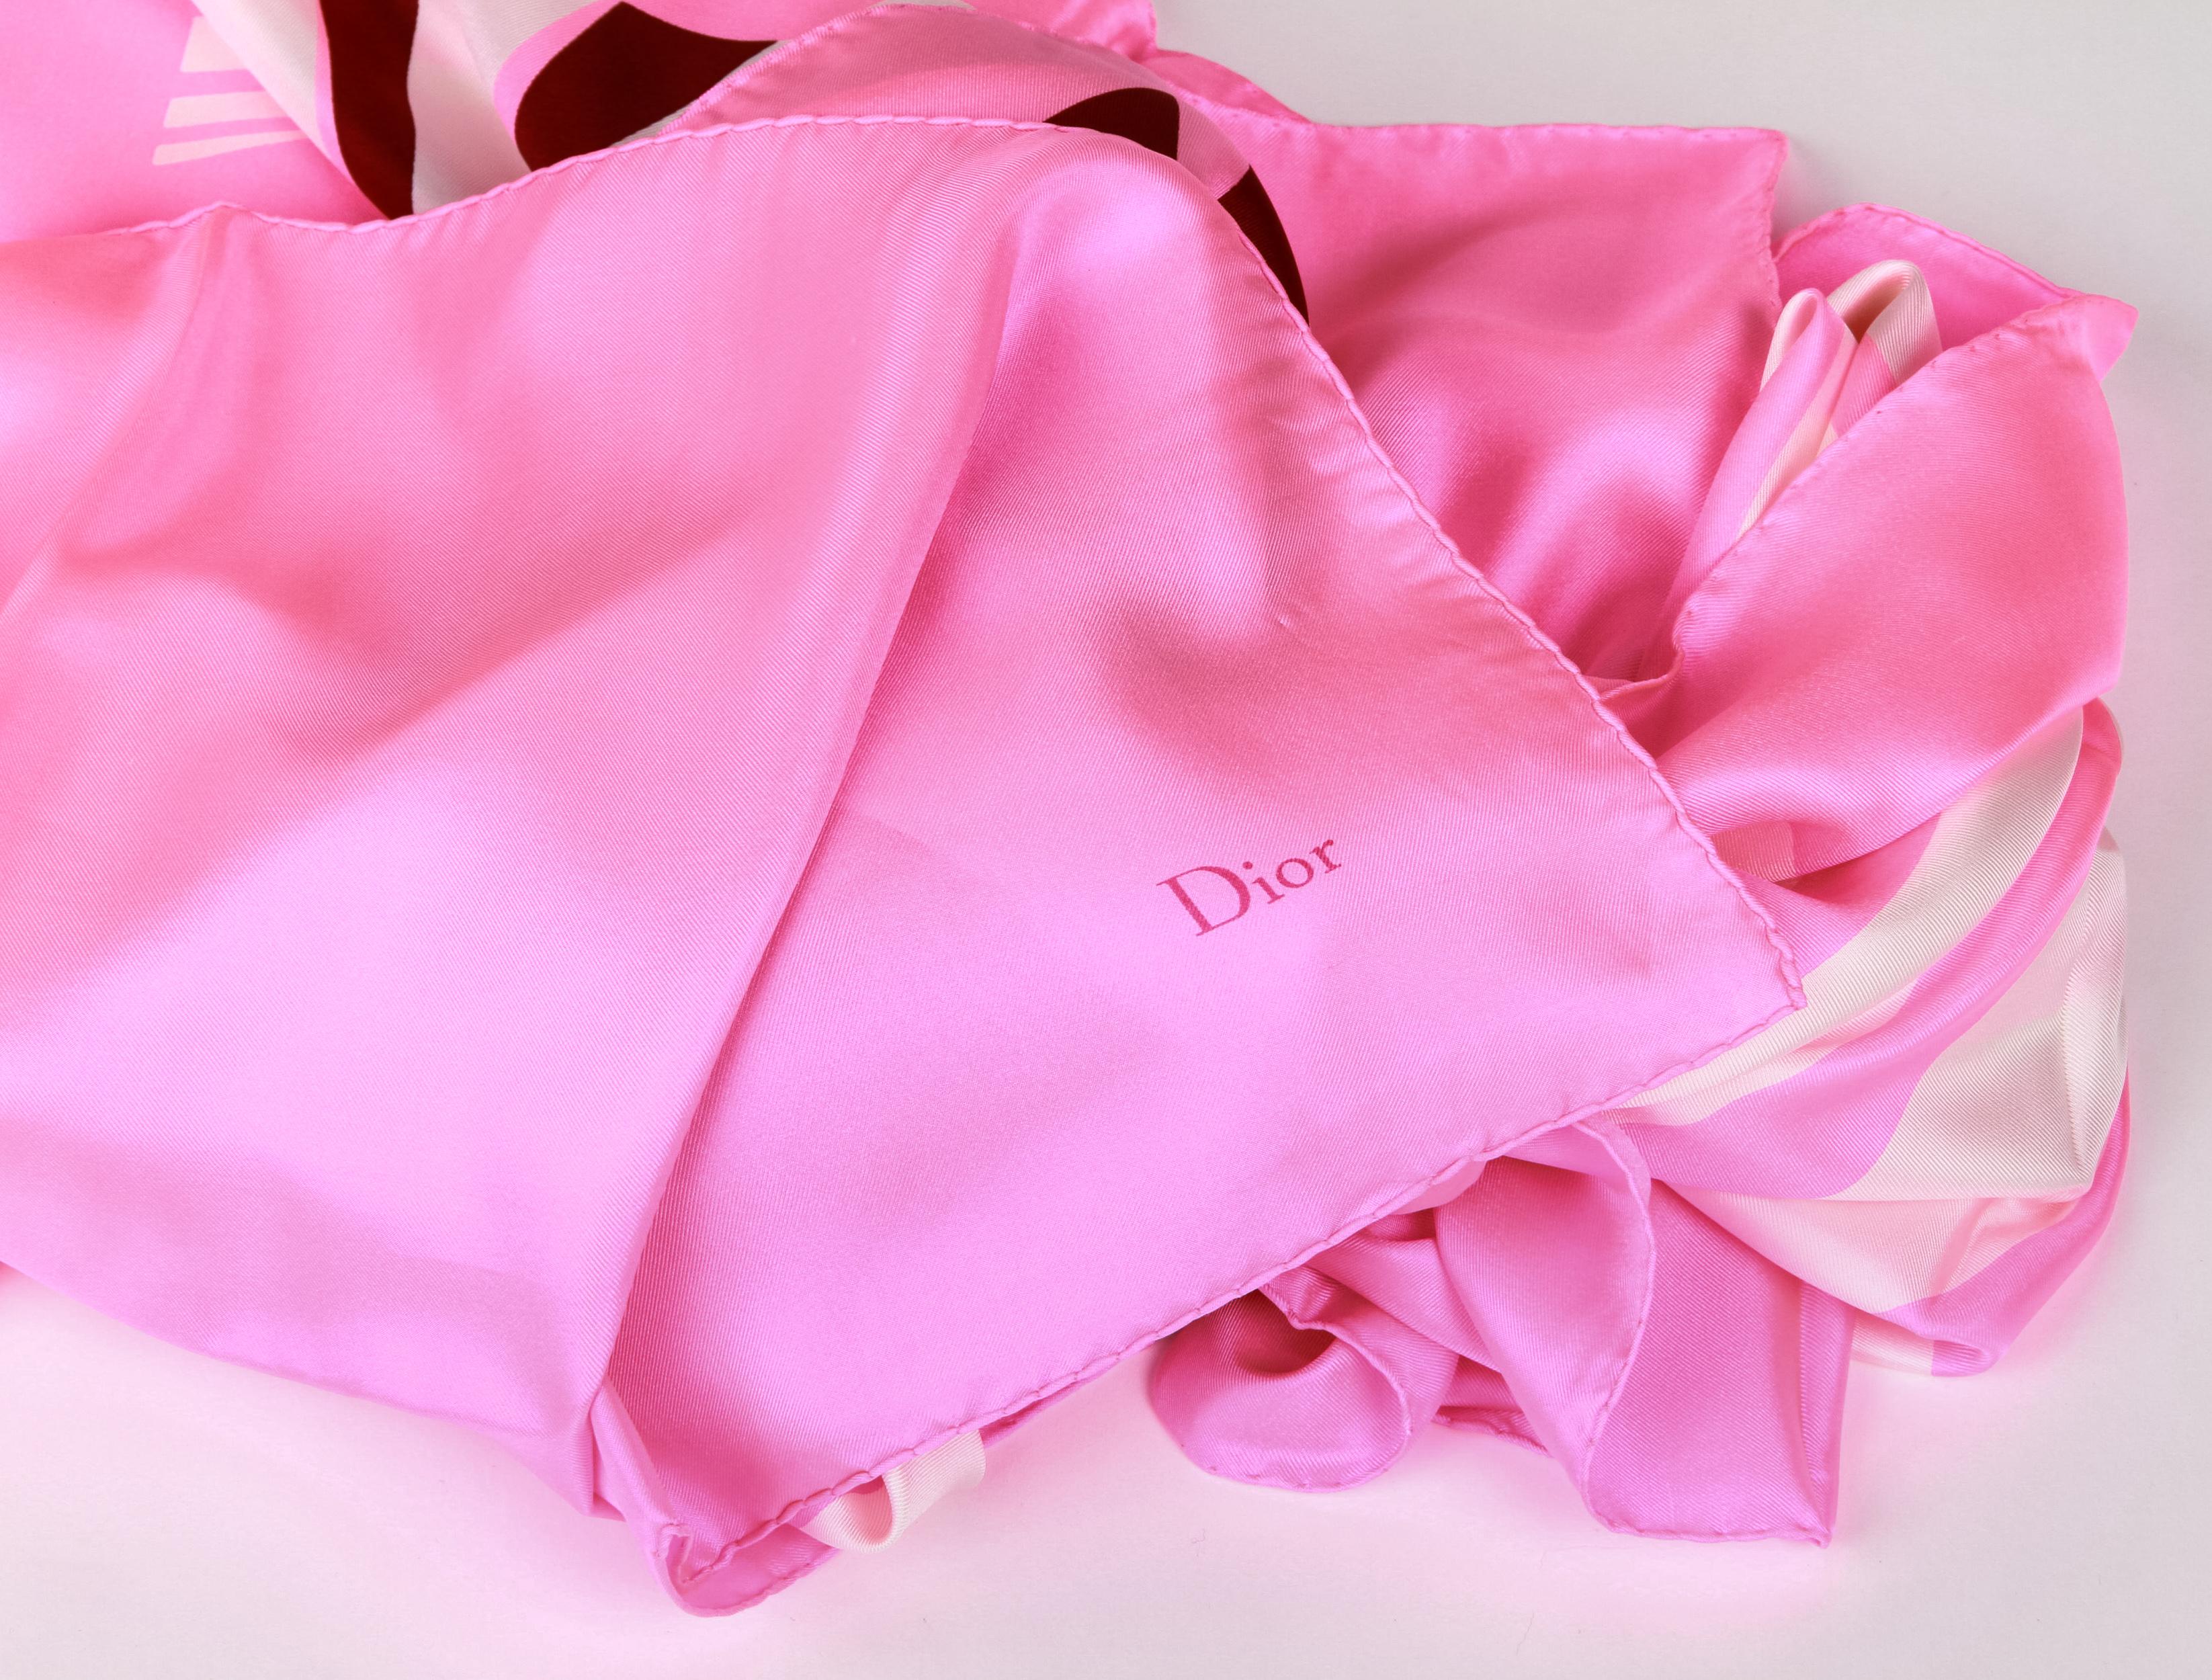 pink dior scarf